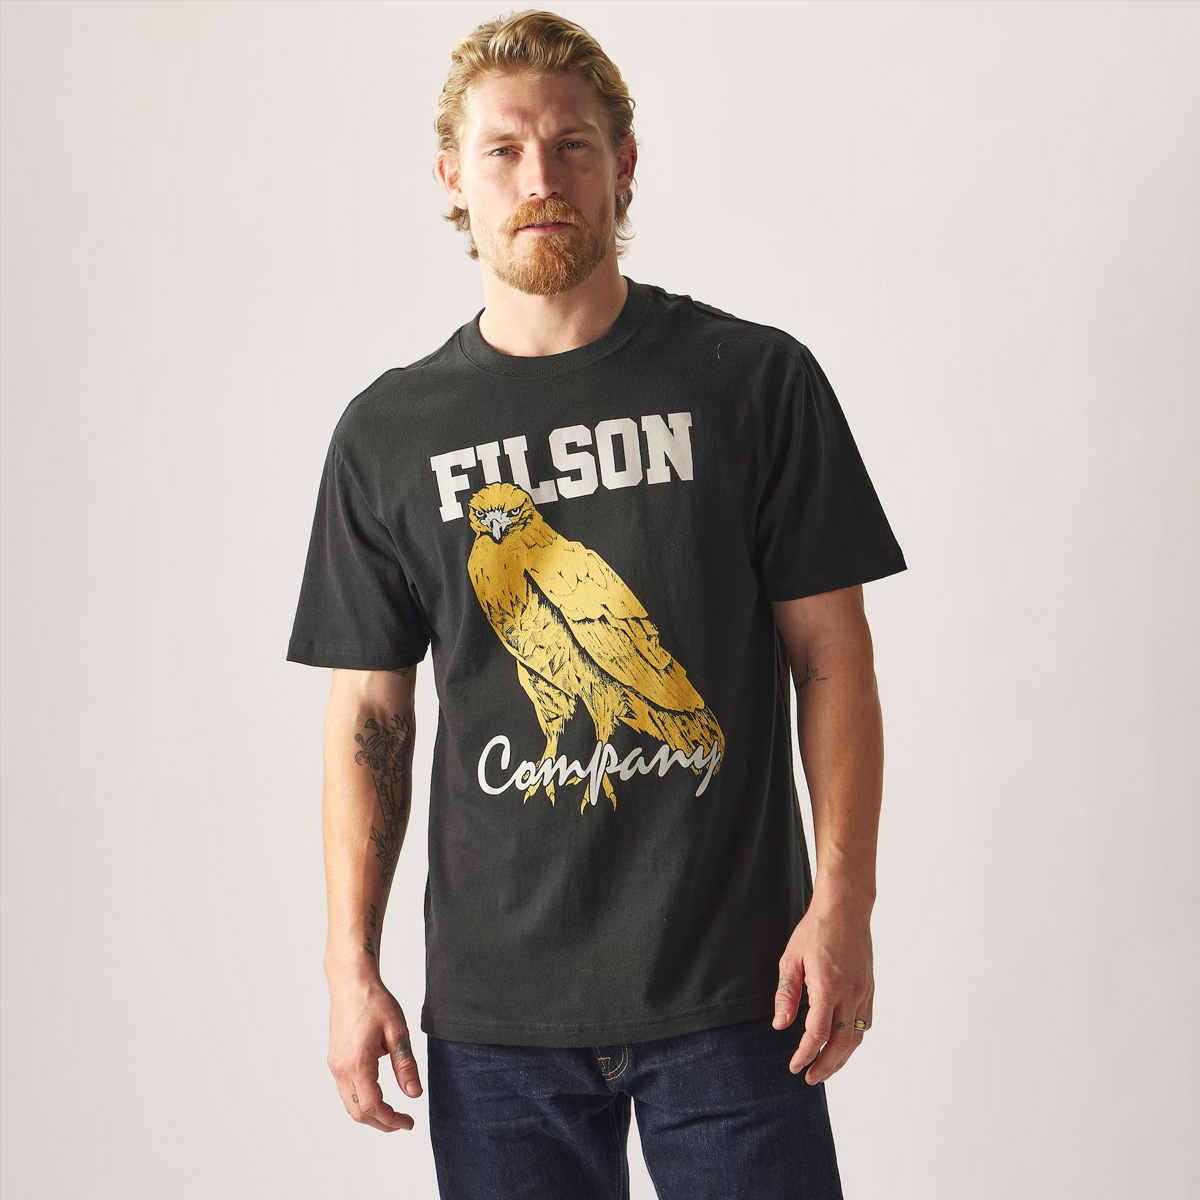 Filson Pioneer Graphic T-Shirt Black/Bird of Grey, gemaakt van 100% katoen met textuur, structuur en een comfortabel gevoel